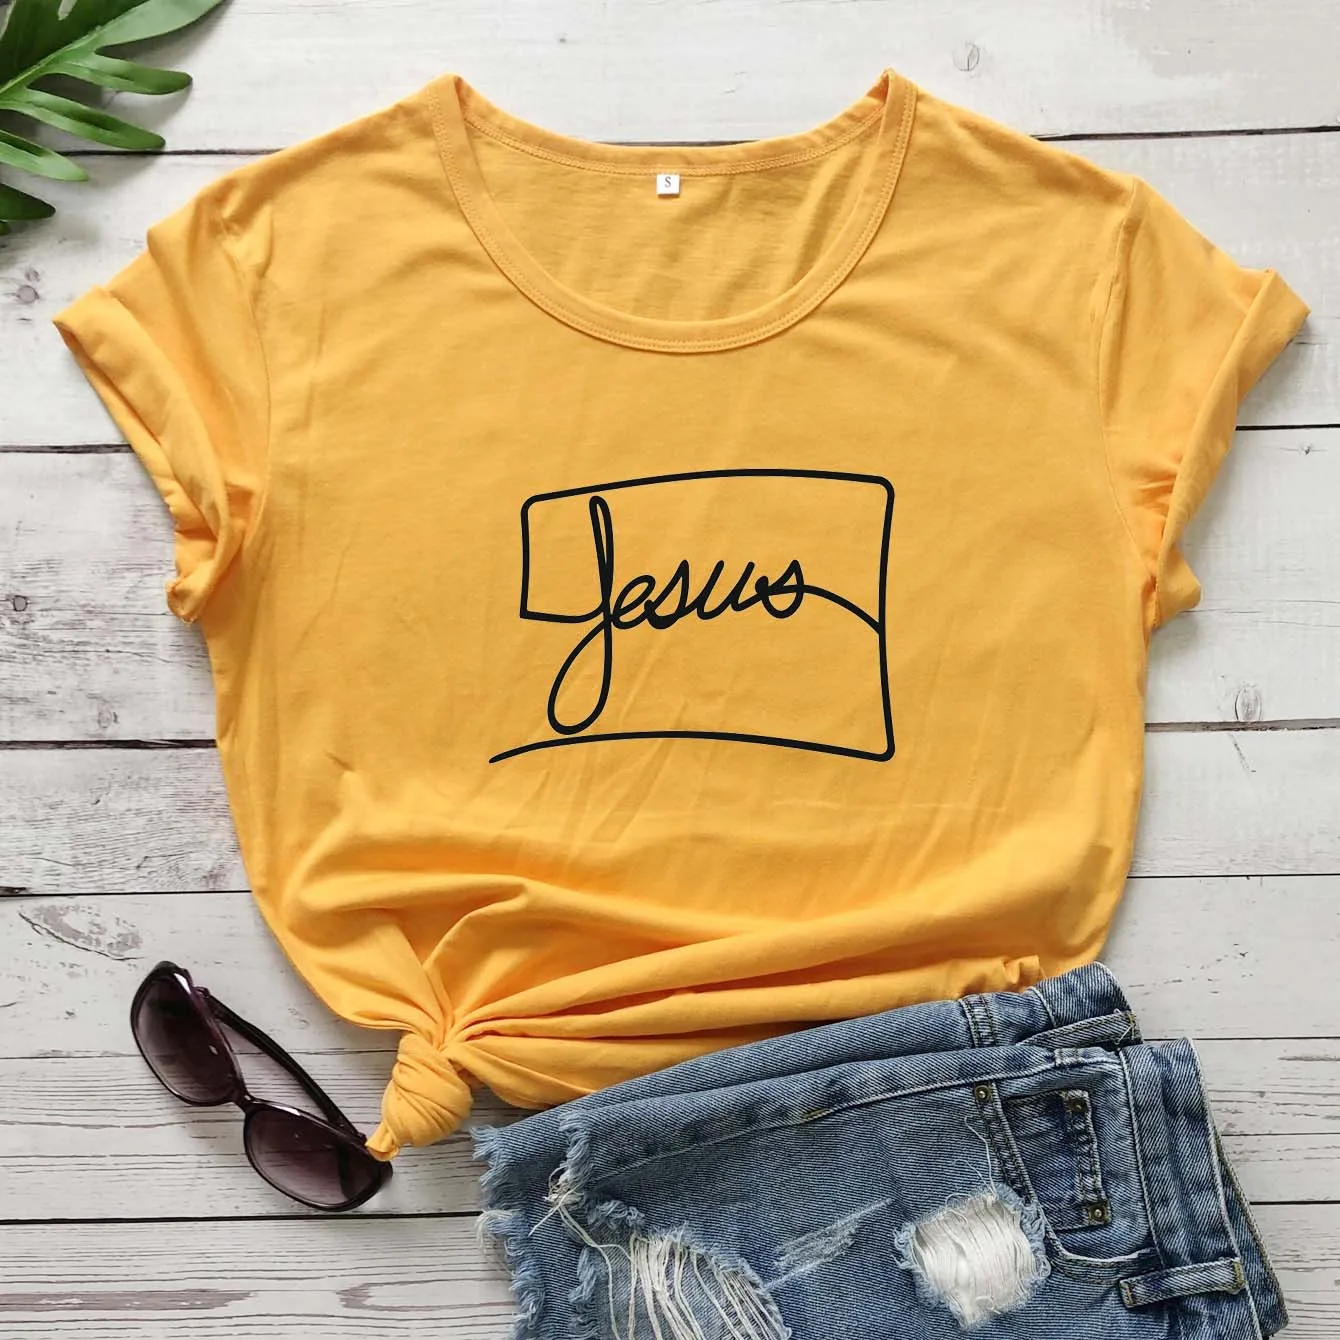 

Иисус футболка Христианство uniex религия лозунг Цитата футболка молодых Подарочная 90s церковь вечерние винтажные футболки в простом стиле Б...